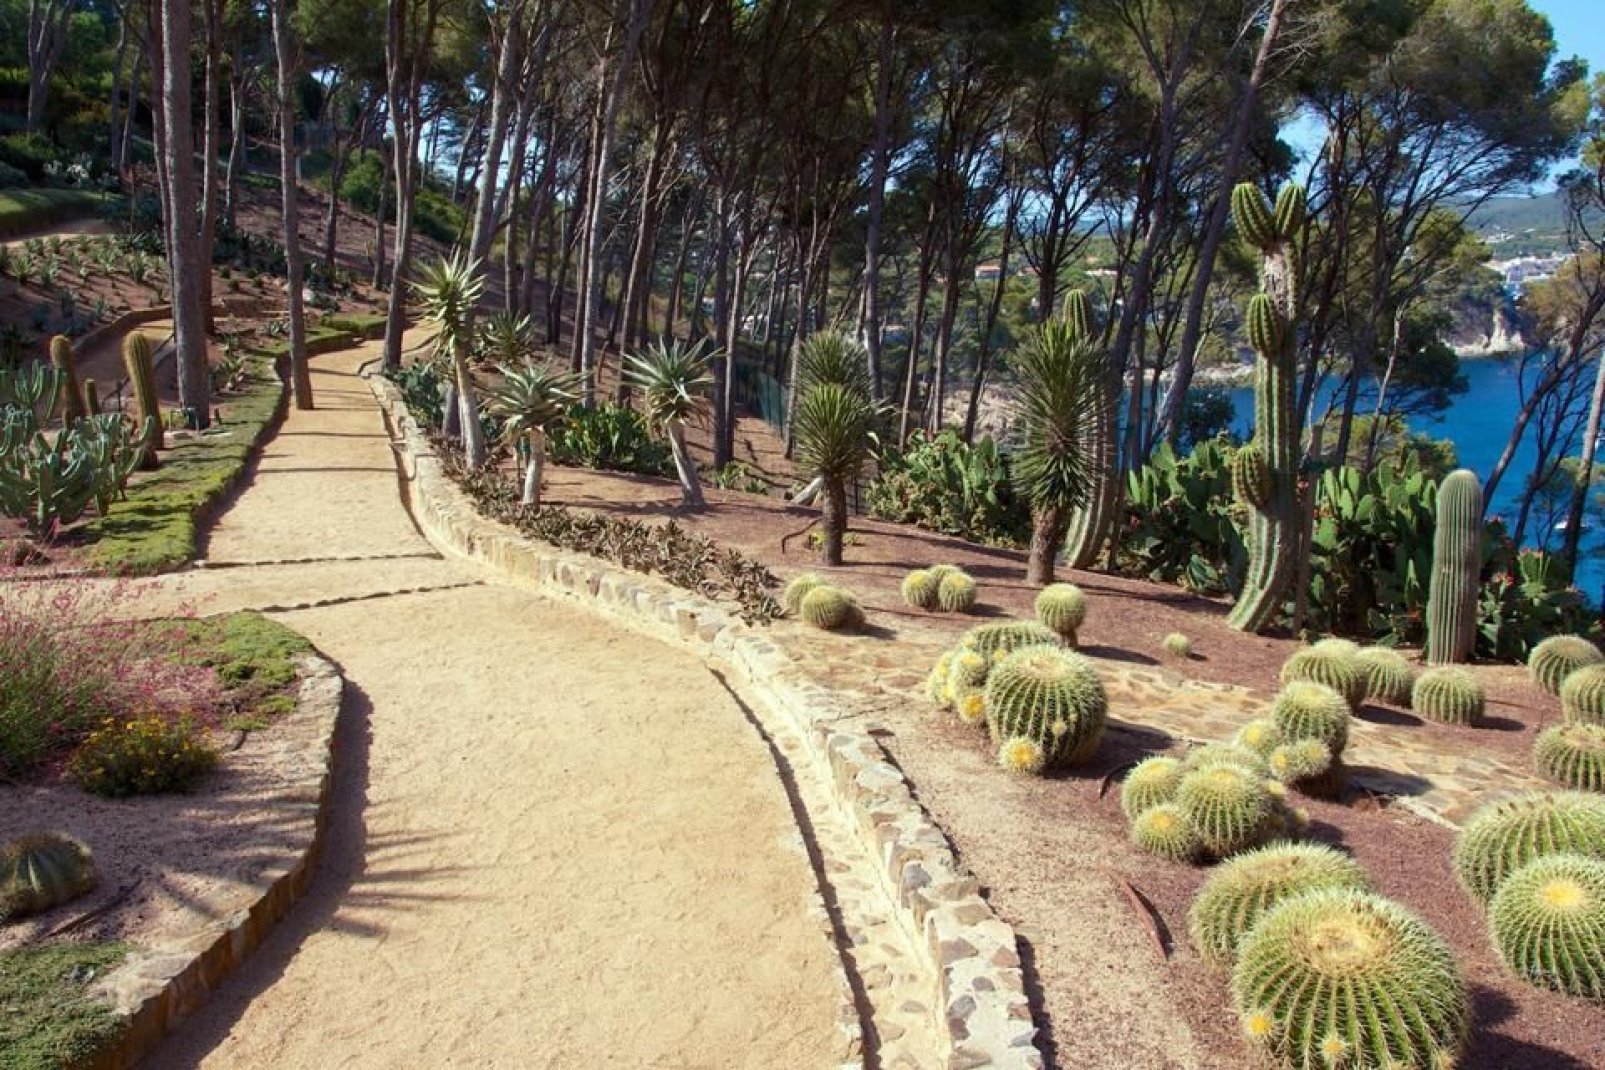 Le Jardin Botanique de Lloret del Mar comporte une belle section, en bord de mer, réservée aux cactus.